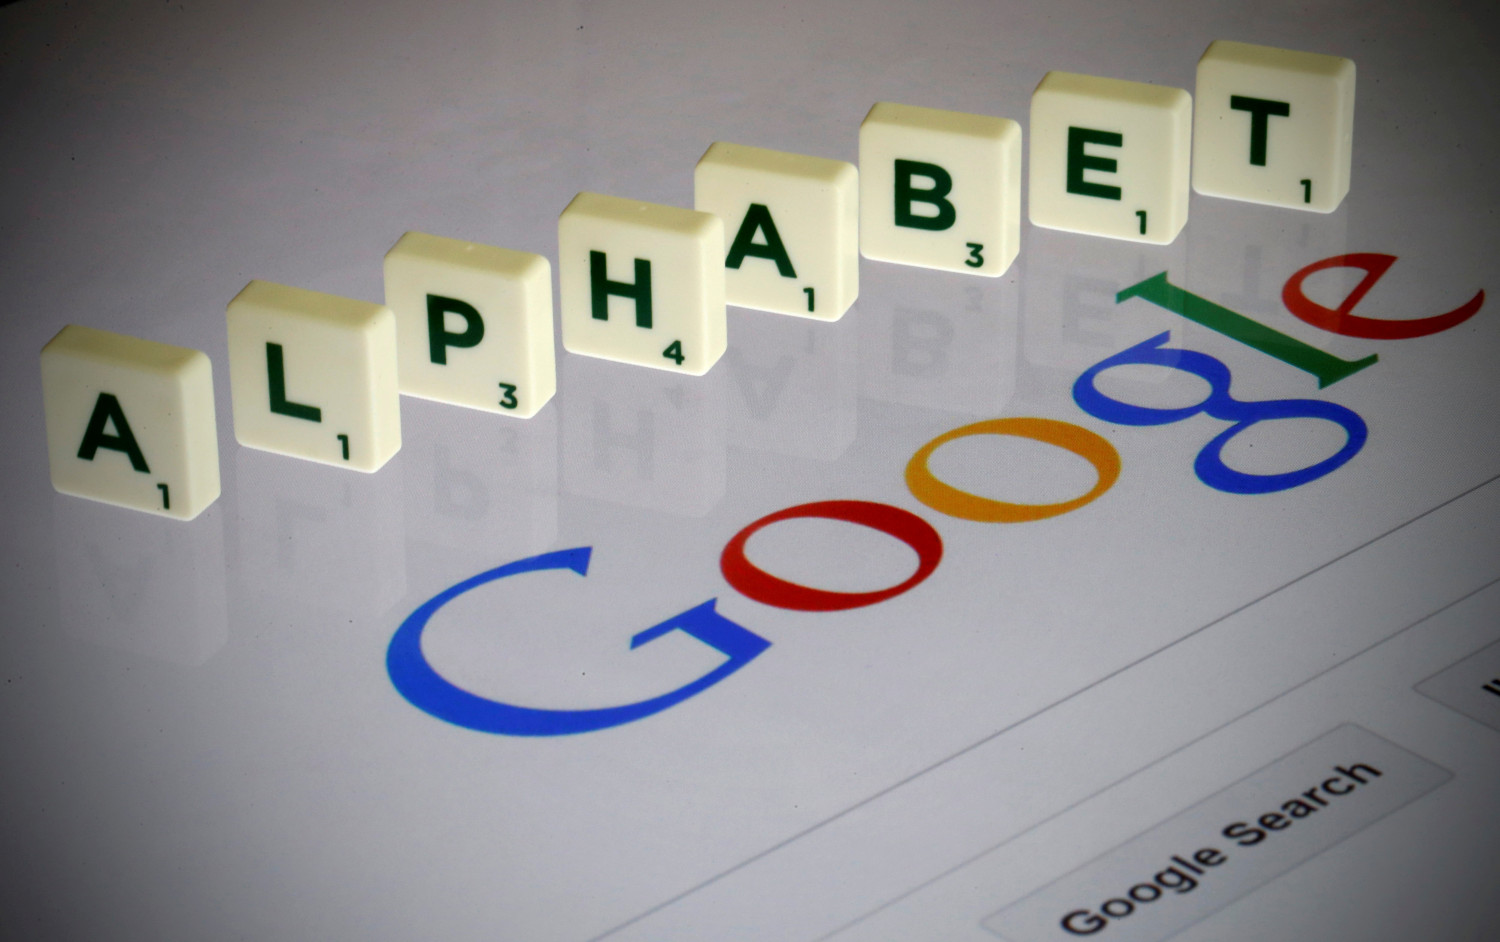 Alphabet (Google) presenta Axion, su último chip basado en tecnología Arm